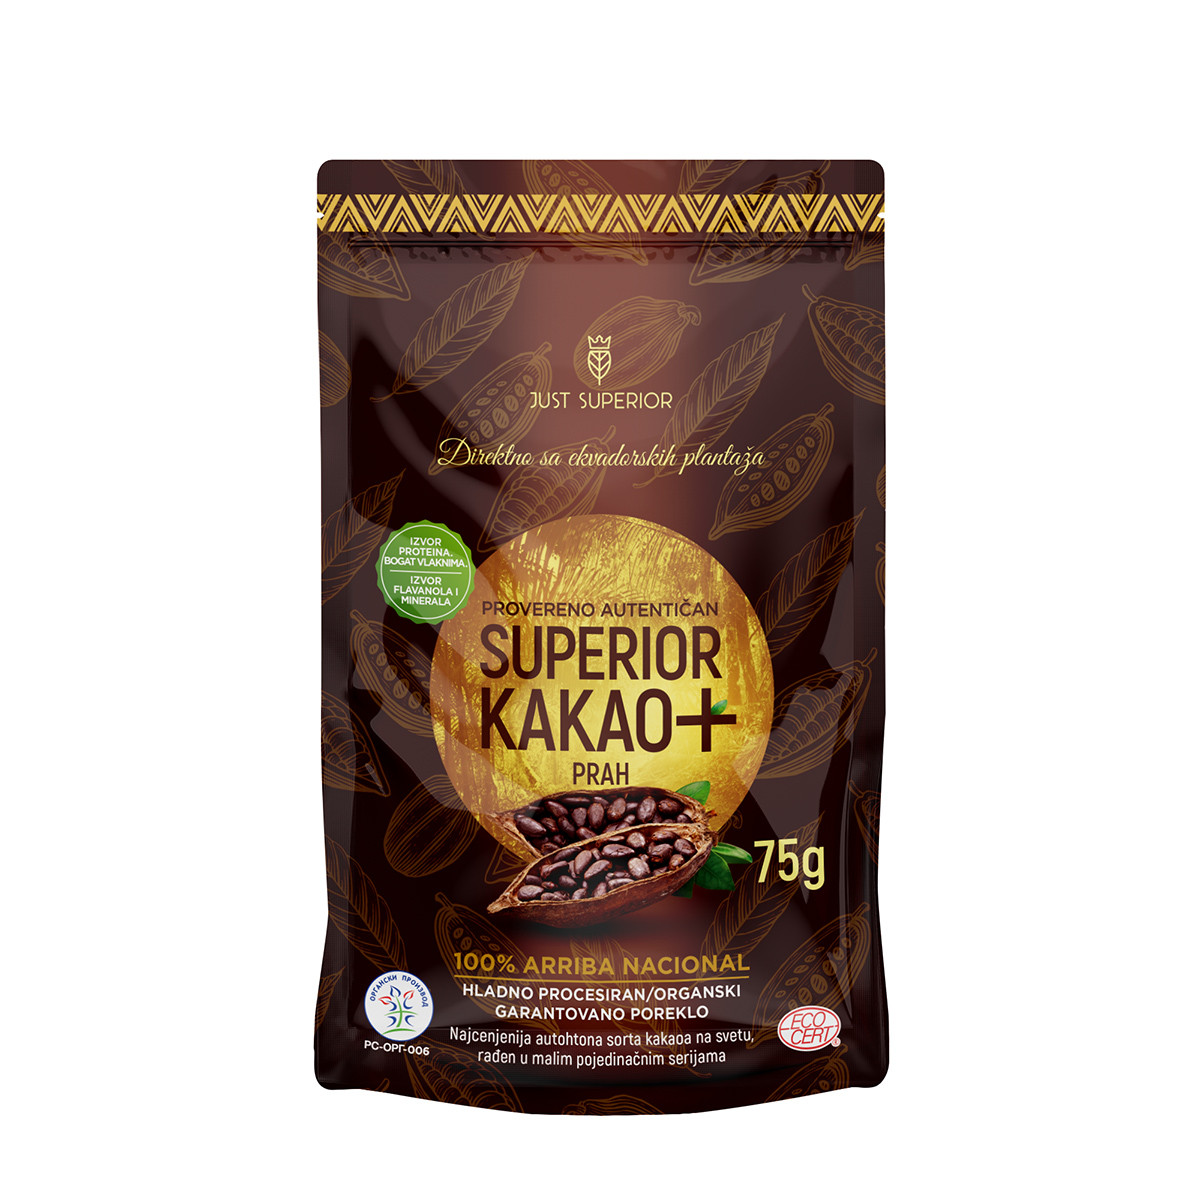 Superior kakao prah Arriba Nacional, 75g 